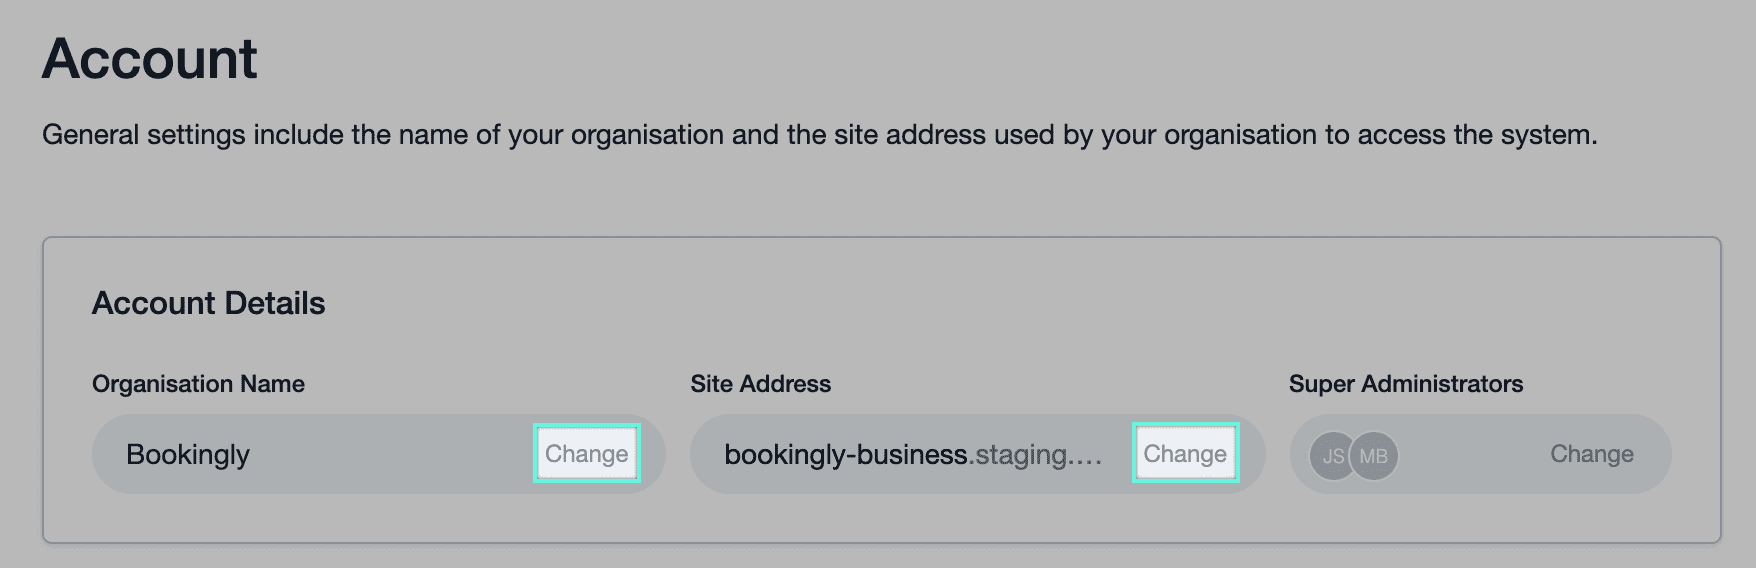 Lien vers le nom de l’entreprise et l’adresse du site avec des boutons Modifier en regard de chacun d’entre eux pour permettre à l'utilisateur de les mettre à jour.